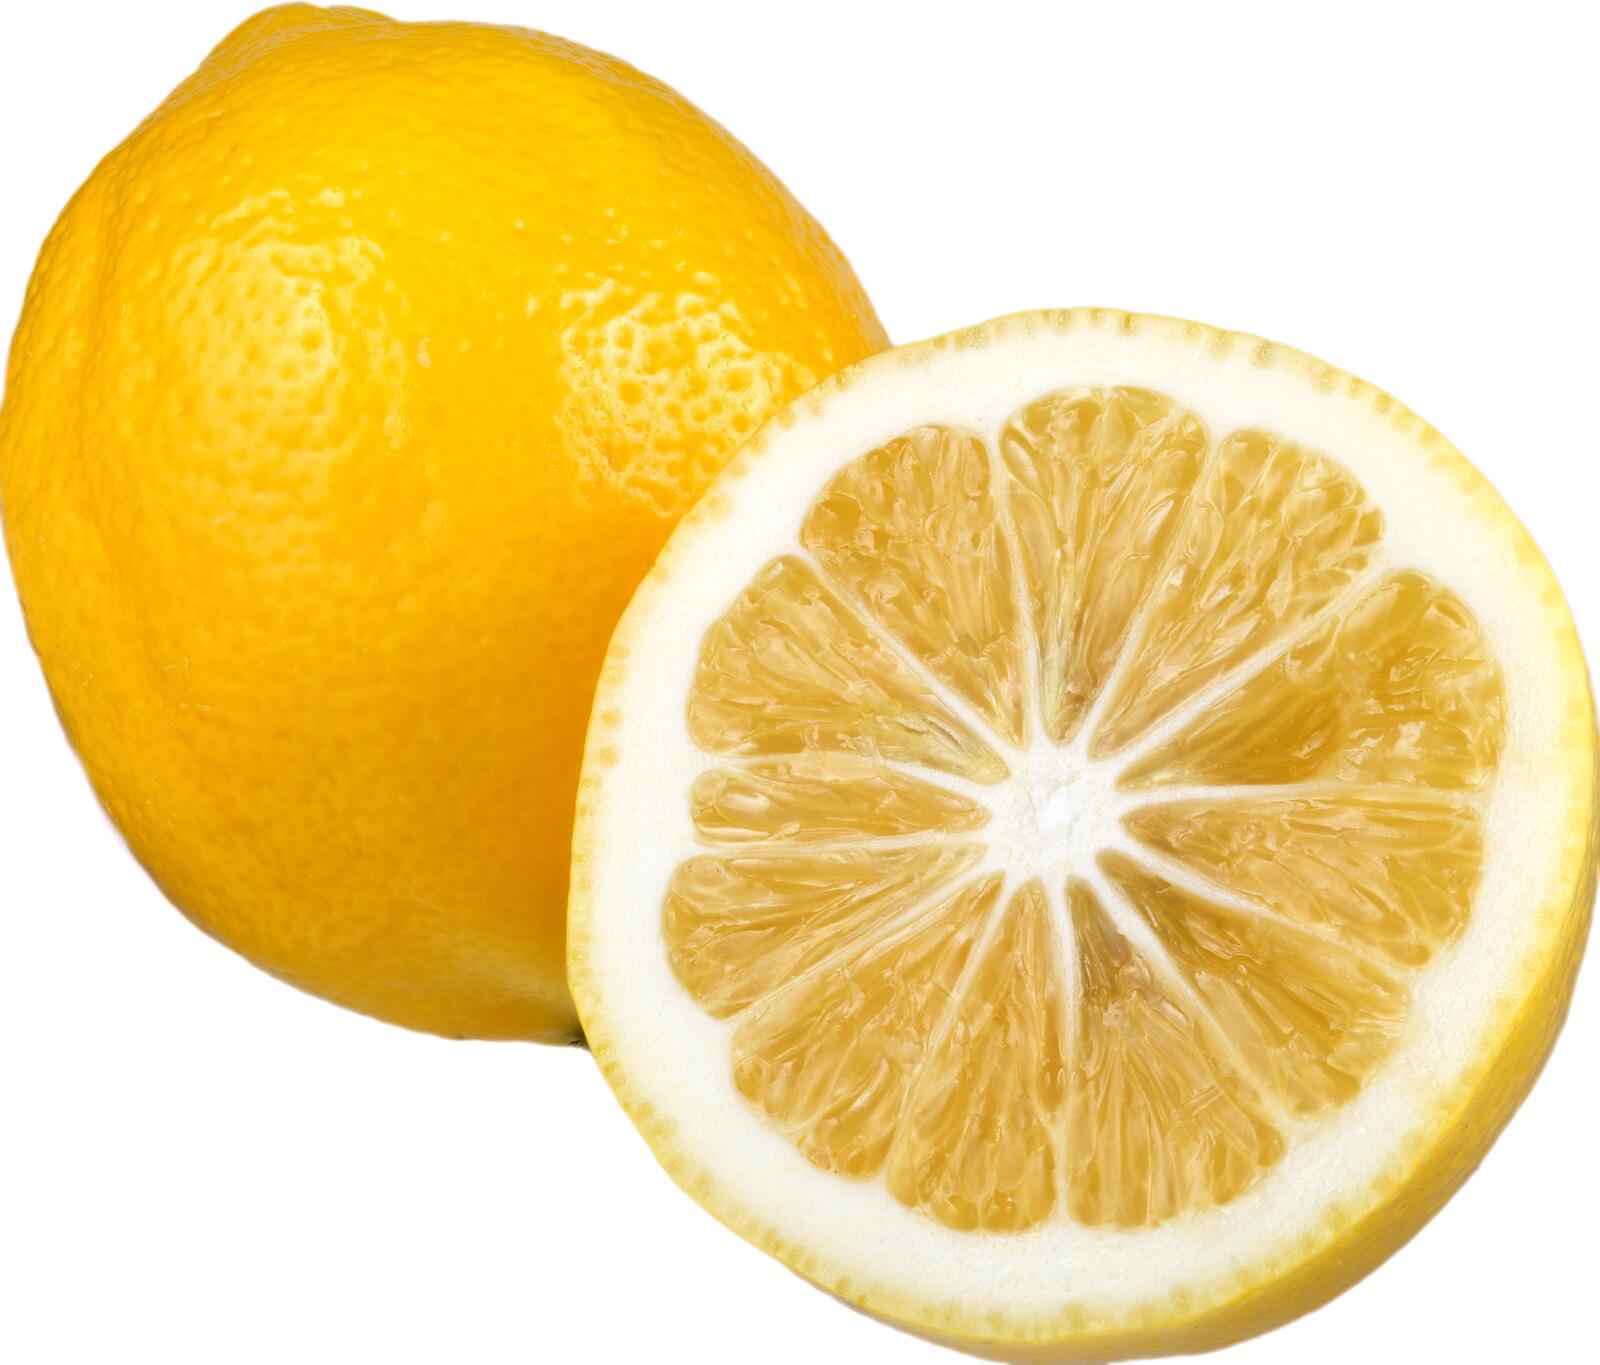 Free photo Lemon on white background